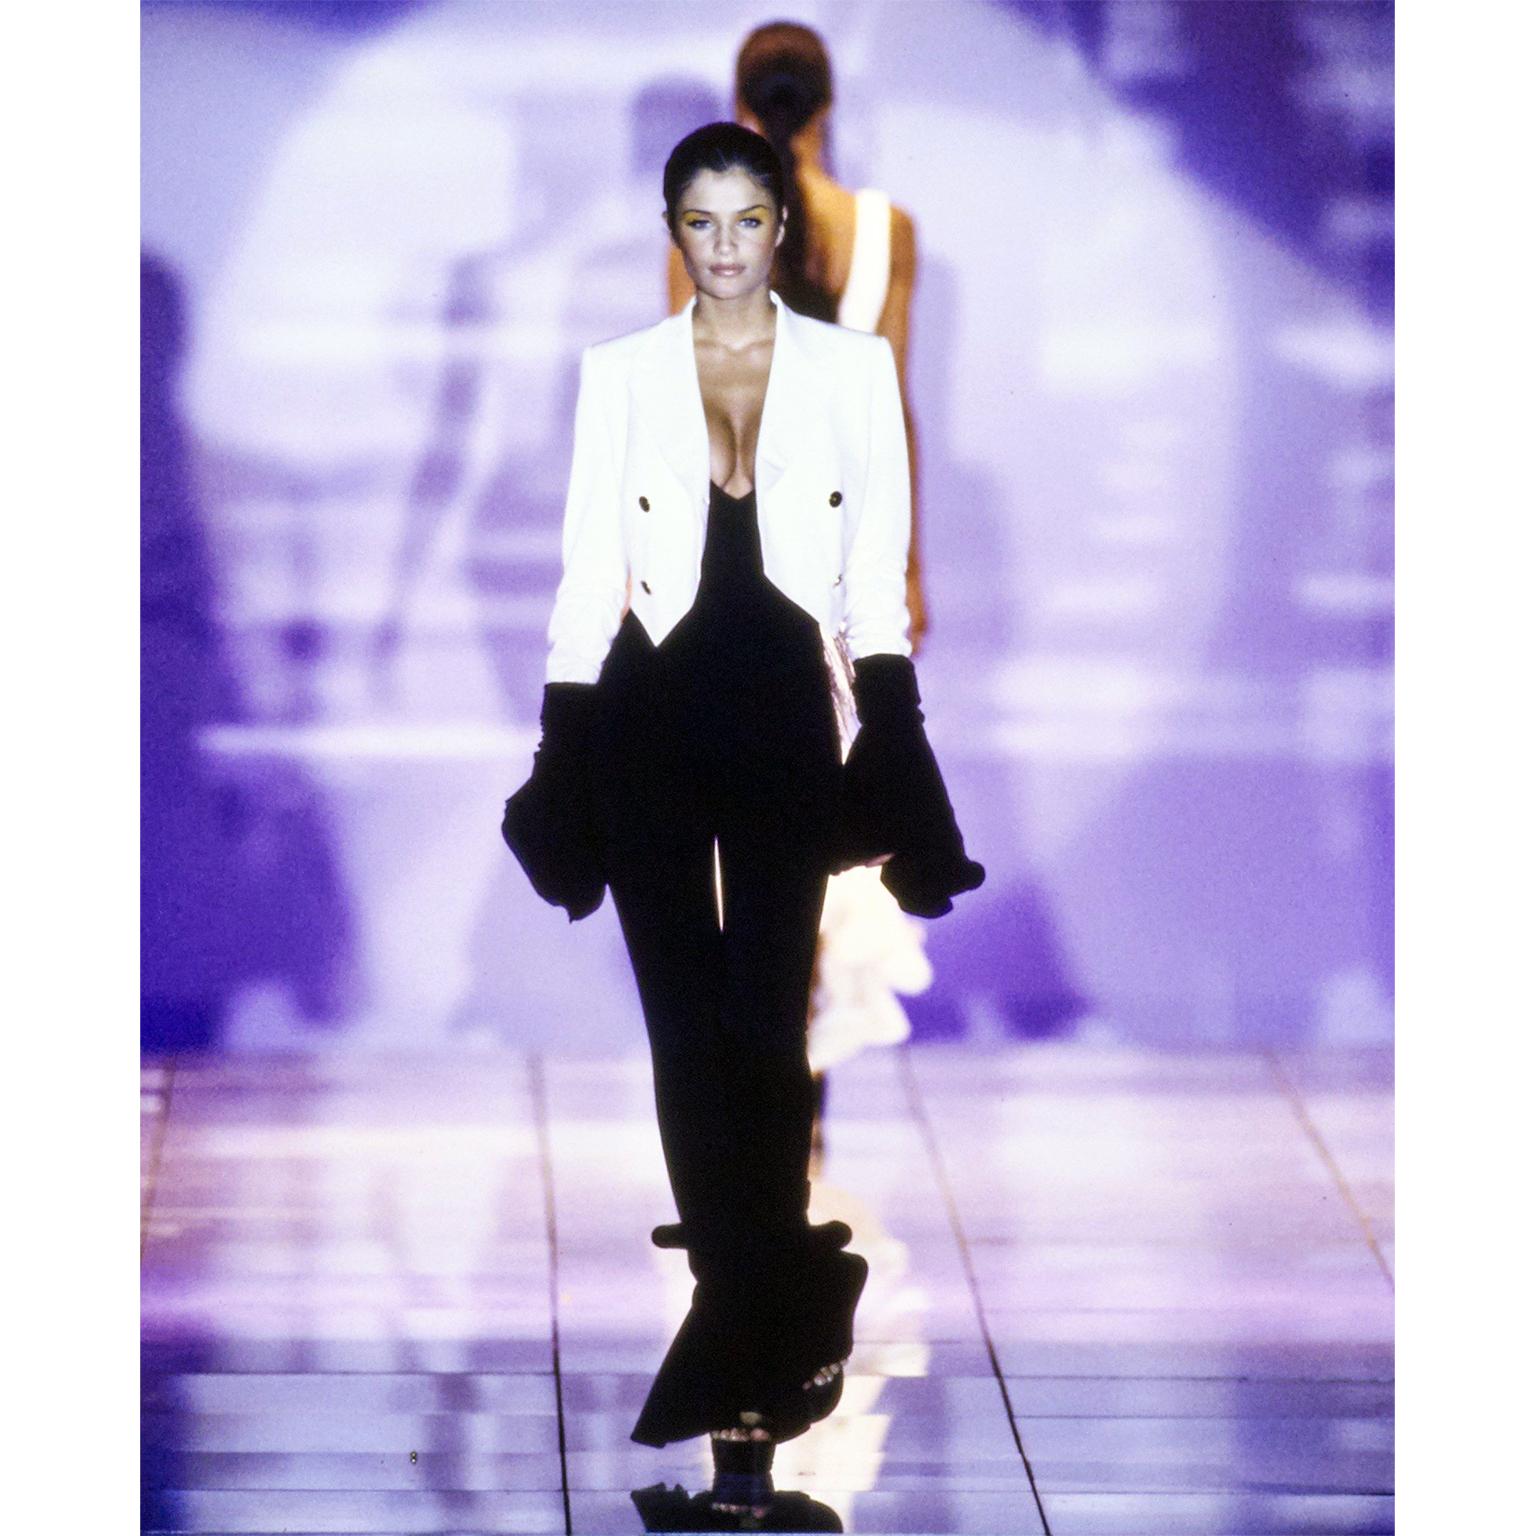 Dies ist ein kultiger schwarzer Stretch-Jumpsuit von Versace mit gerüschtem Saum, den Gianni Versace für seine Frühjahr/Sommer-Kollektion 1993 entworfen hat. Dieser aufsehenerregende Overall besteht aus 90% Viskose, 8% Nylon und 2% Elasthan. Es gibt